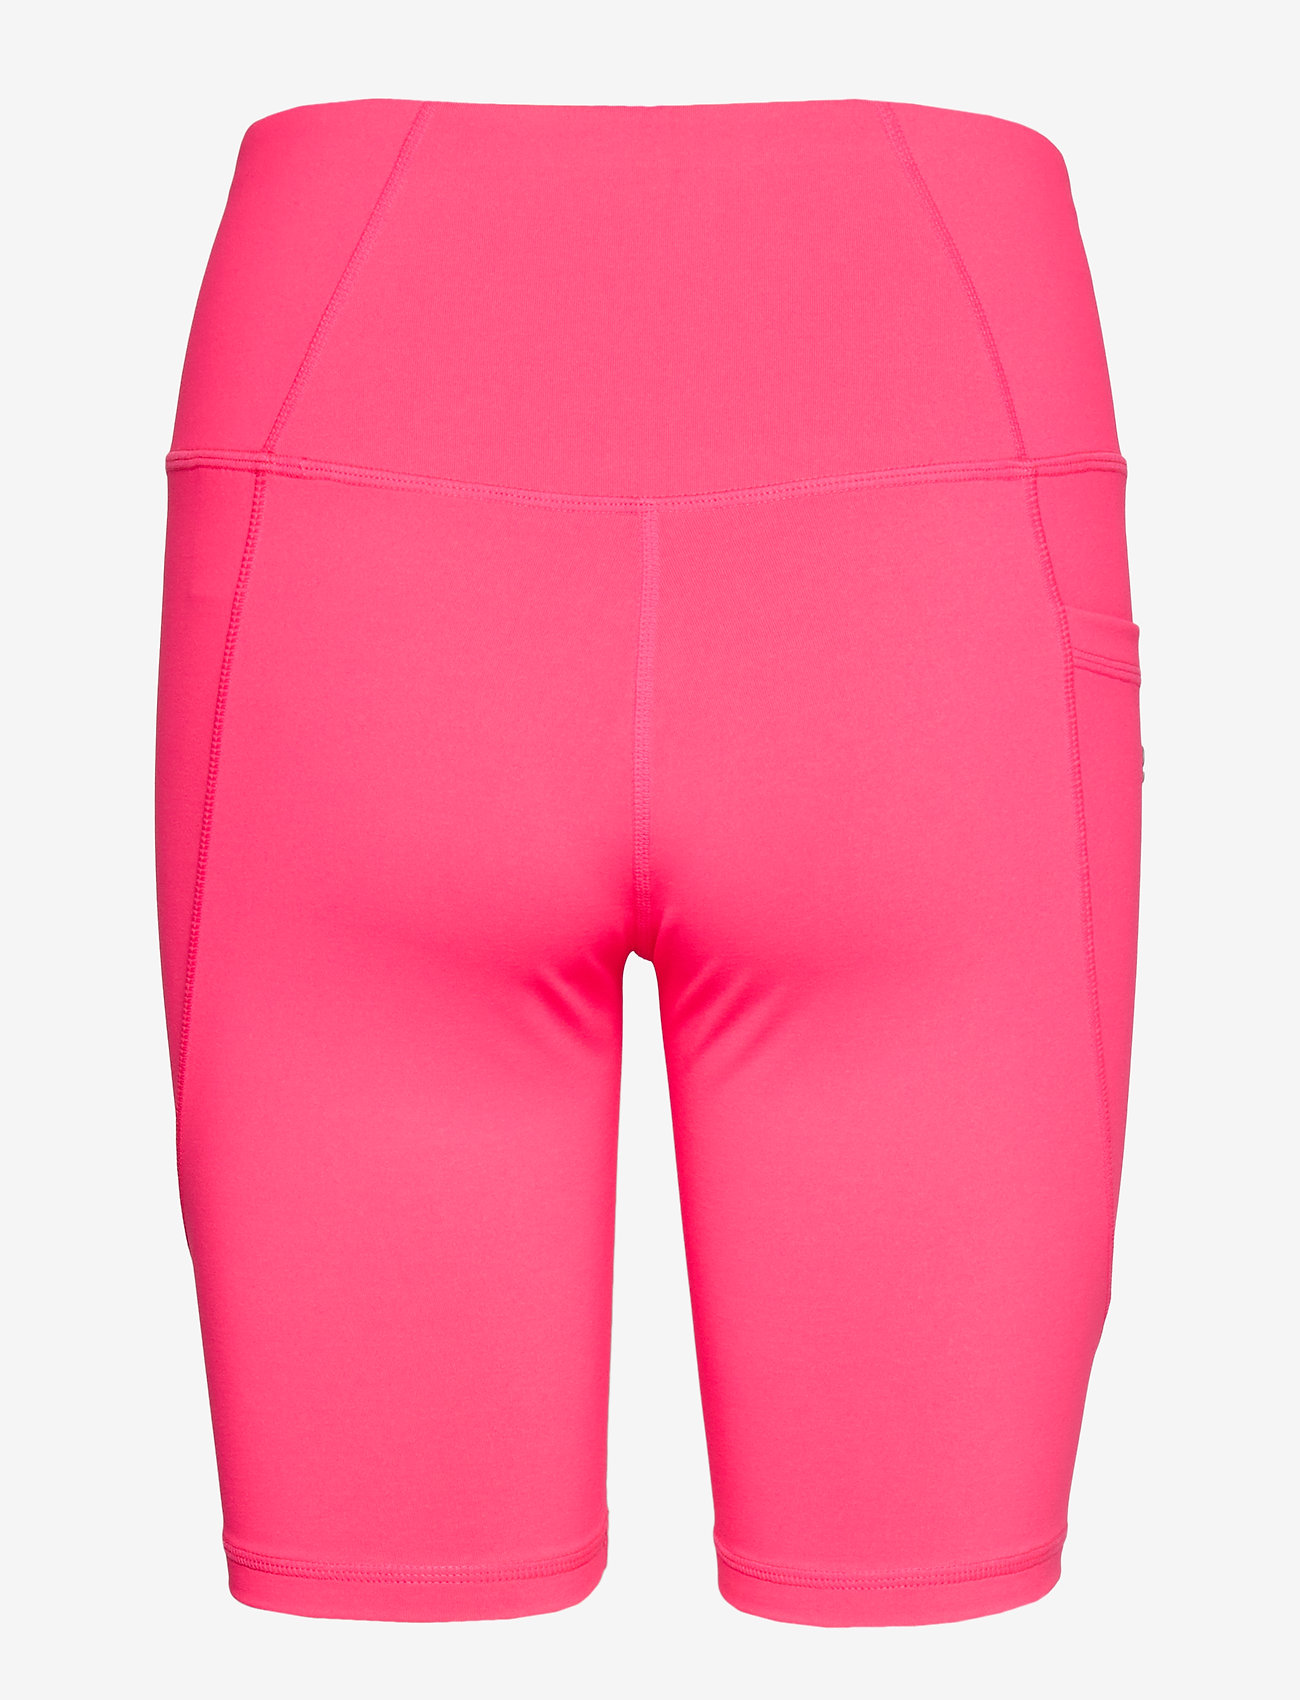 Svea - Svea Sport Shorts - treenishortsit - neon pink - 1